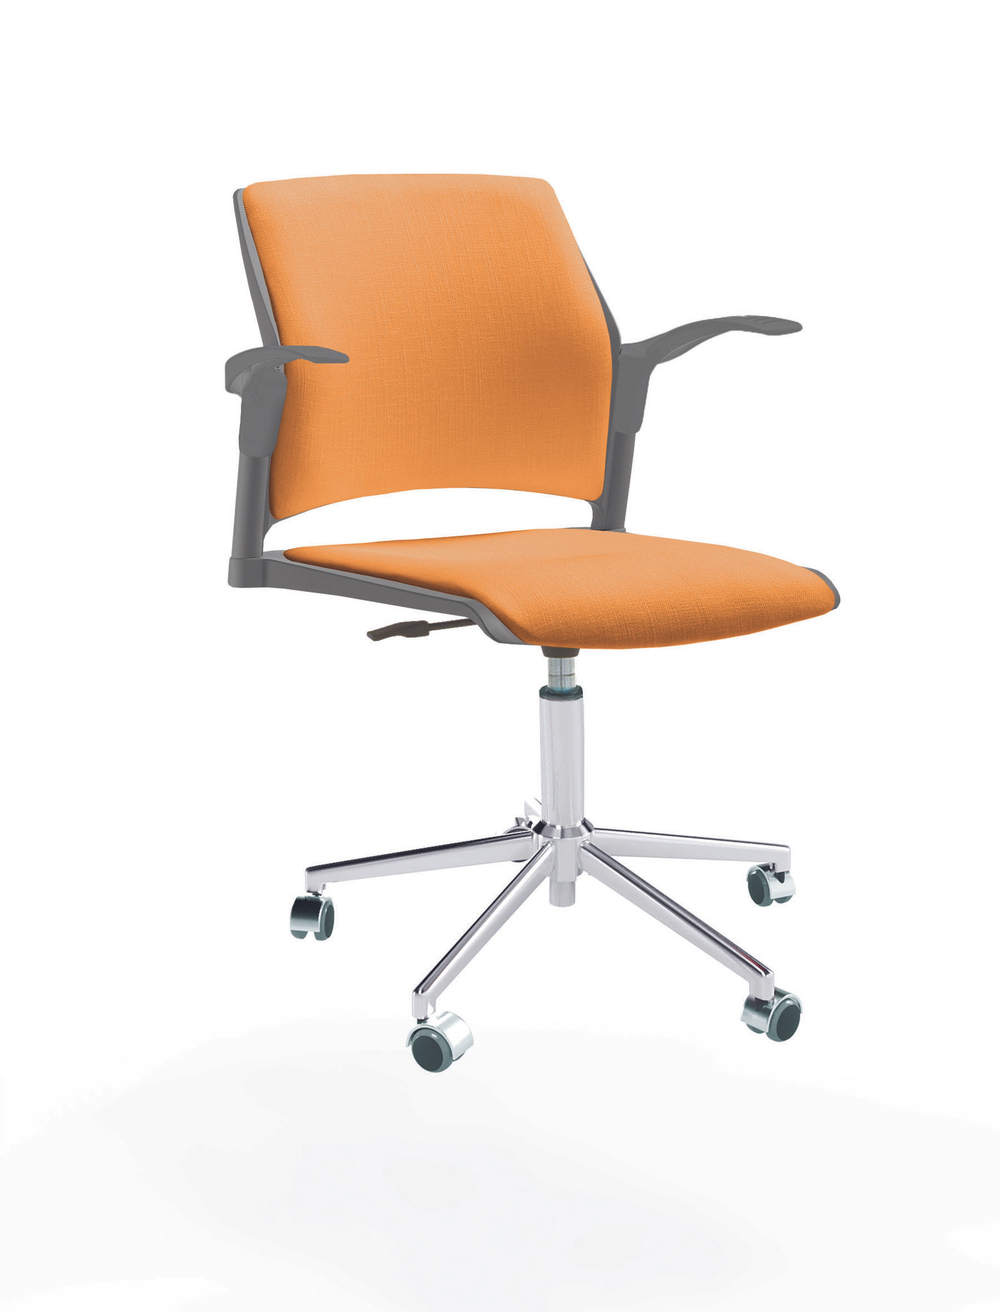 Кресло Rewind каркас хром, пластик серый, база стальная хромированная, с открытыми подлокотниками, сиденье и спинка оранжевые